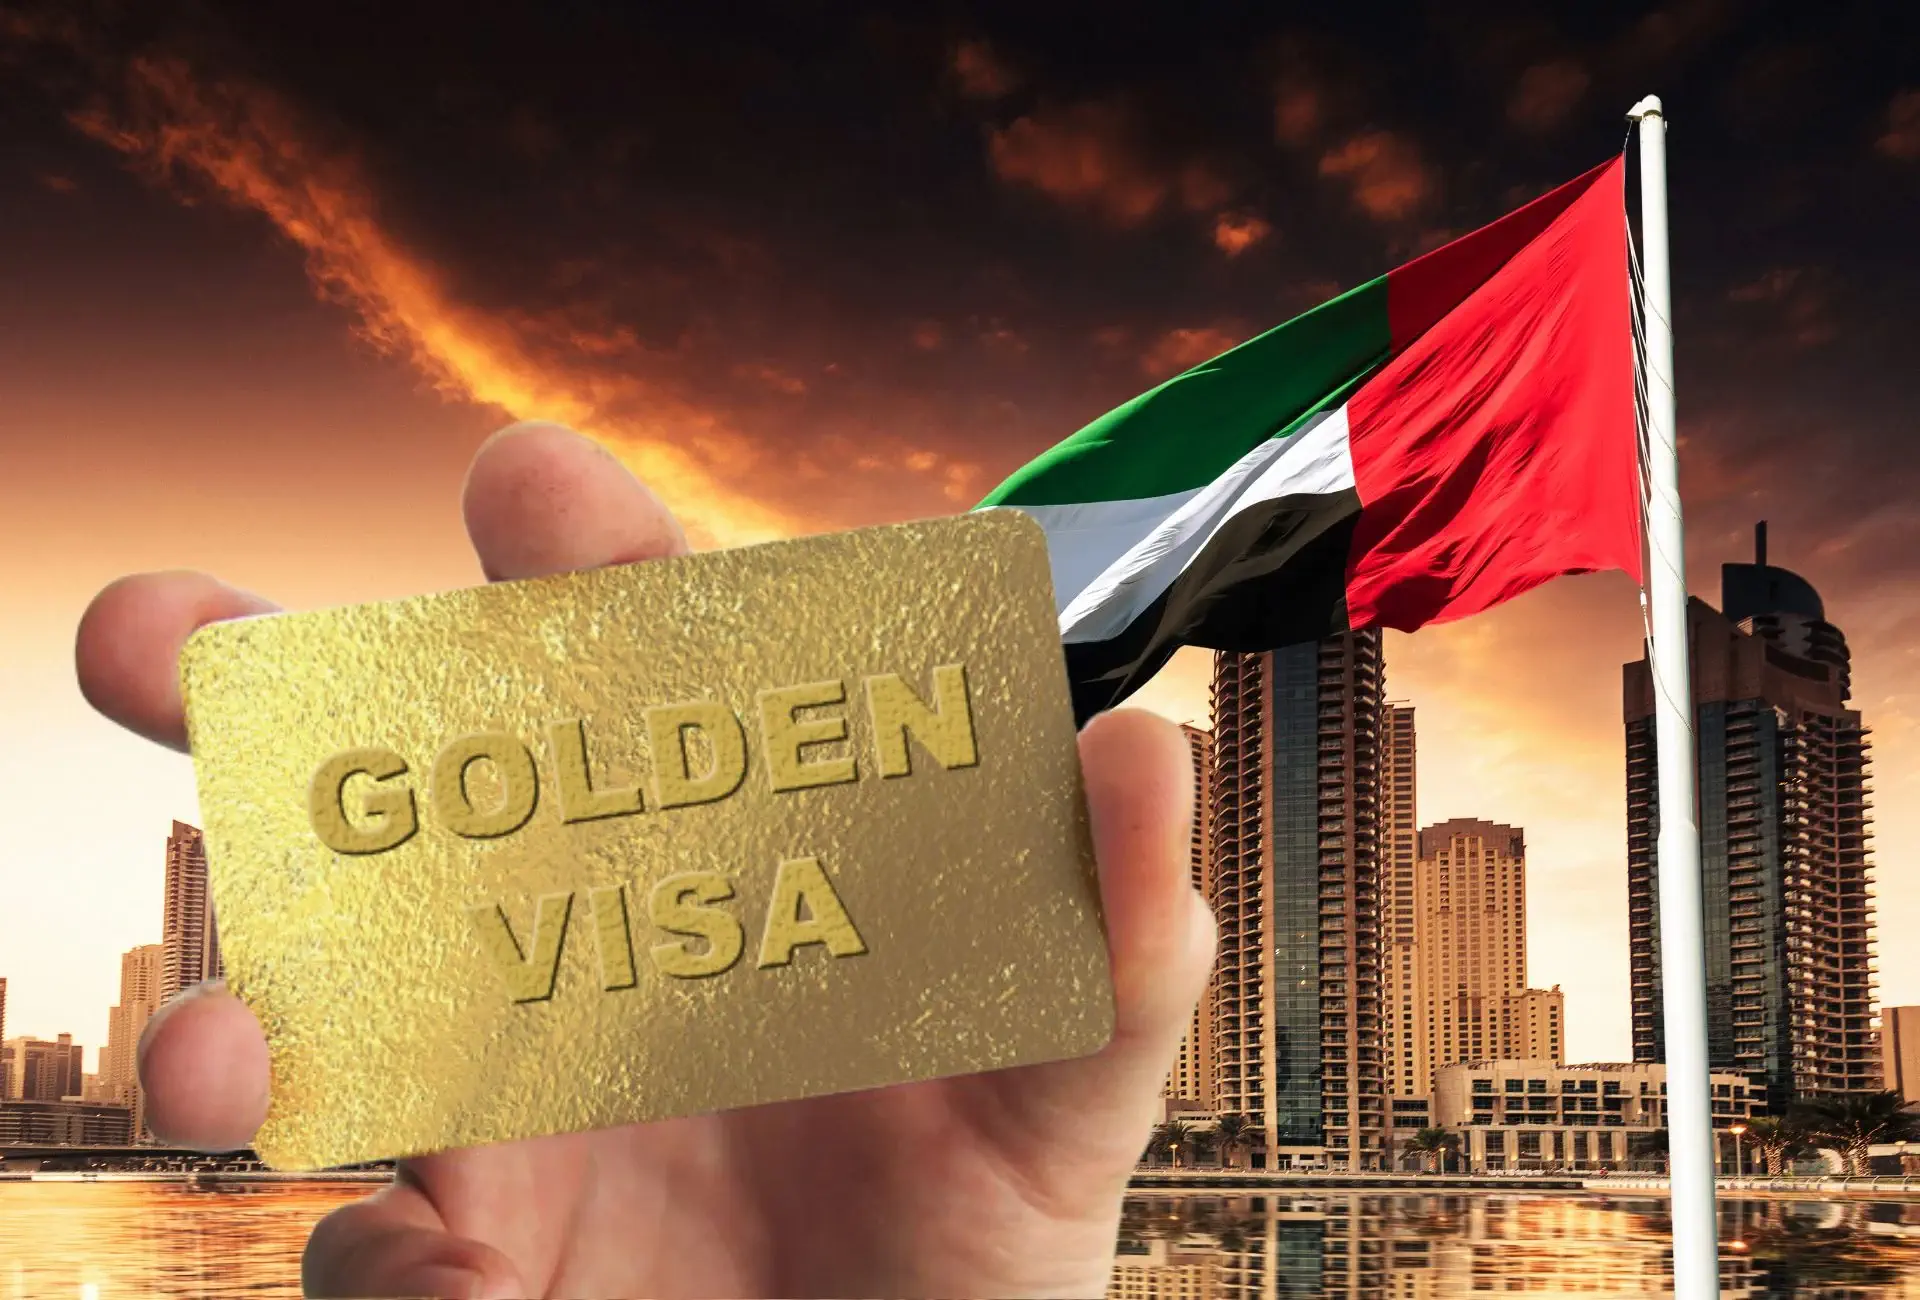 How to Apply for the Golden Visa UAE v1